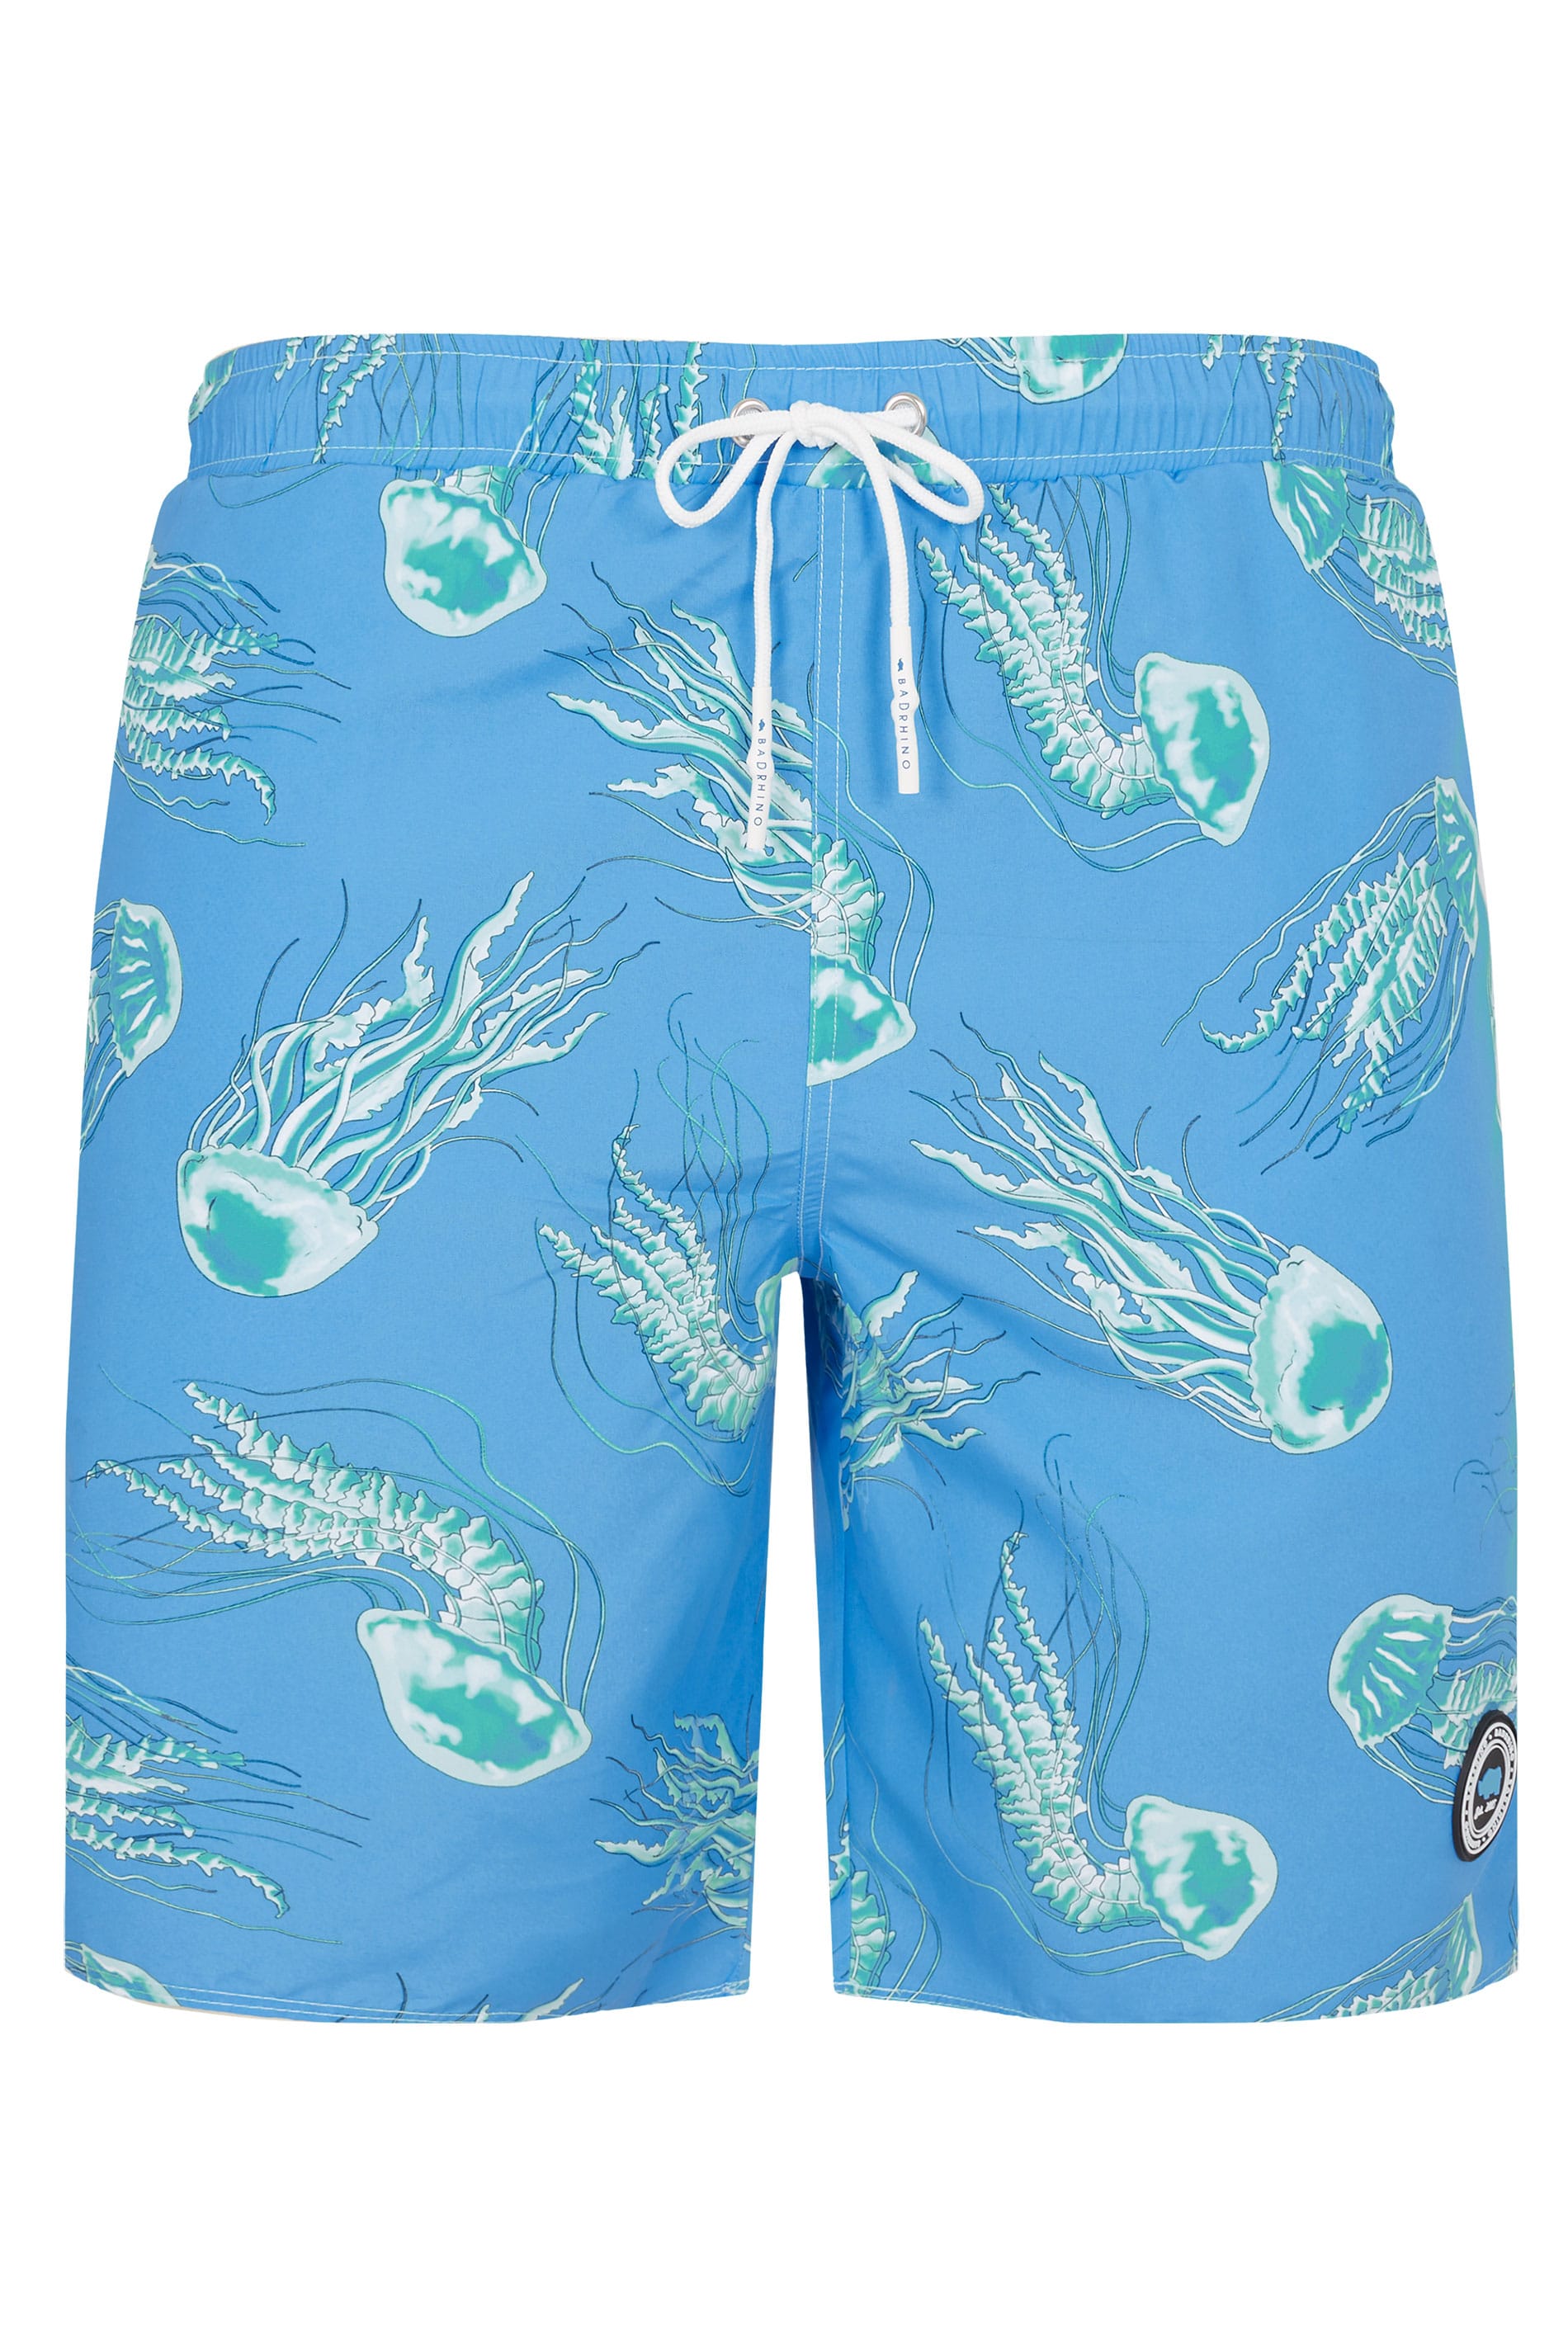 BadRhino Blue Jellyfish Swim Shorts | Big Sizes M to 8XL | BadRhino